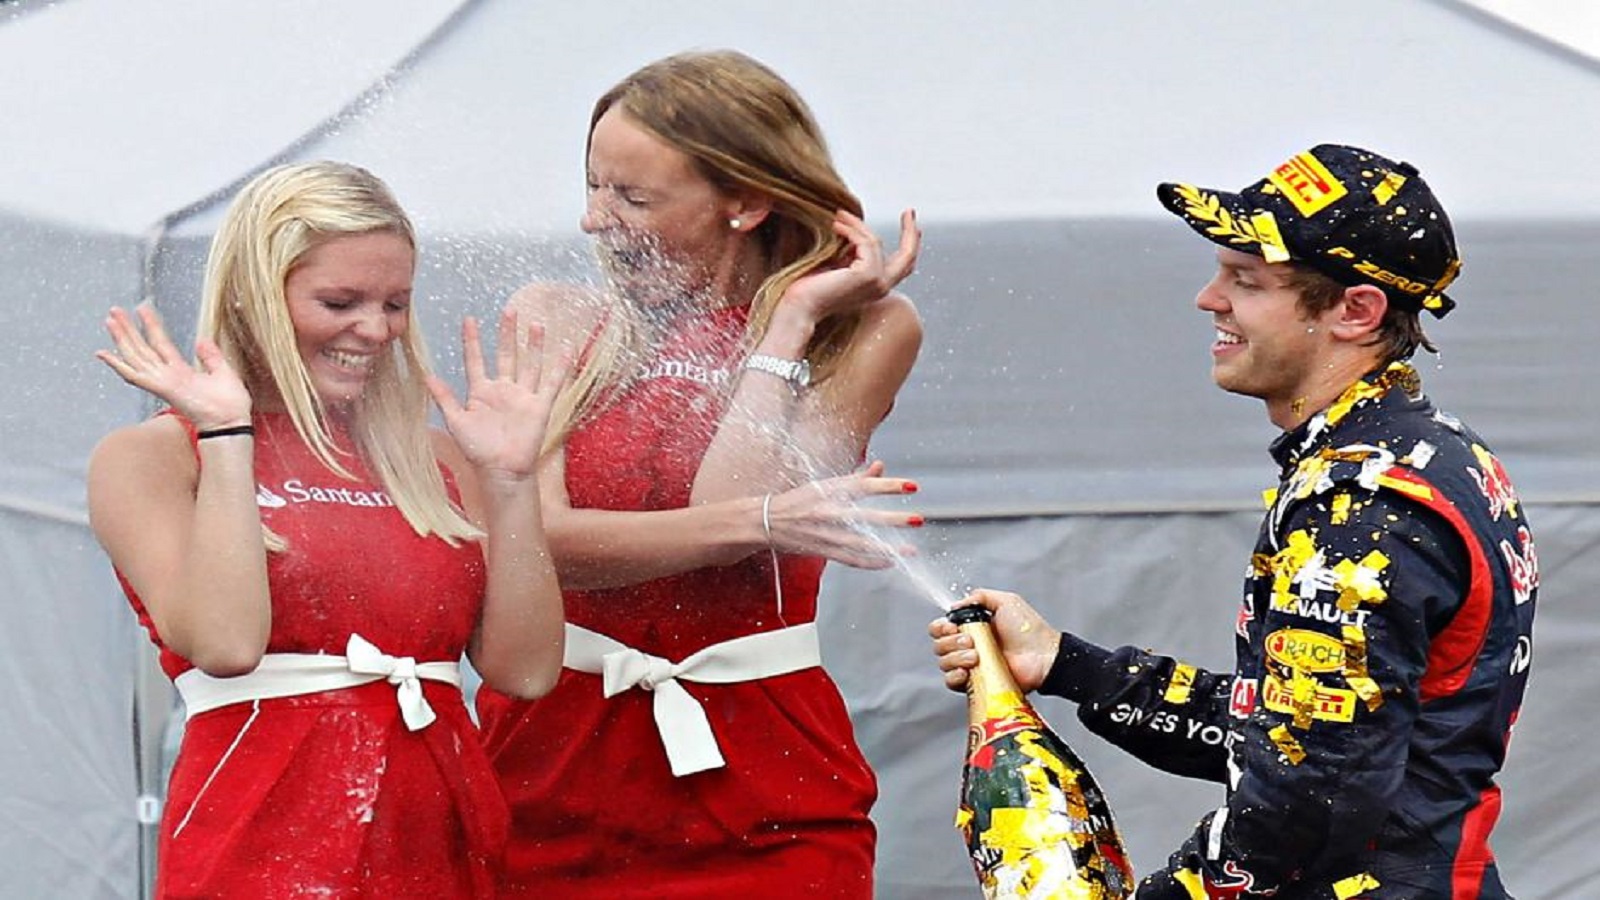  ثمة تقليد في نهاية مباراة الفورمولا 1 يتمثل في فتح زجاجات الشامبانيا على فتيات Grid Girls